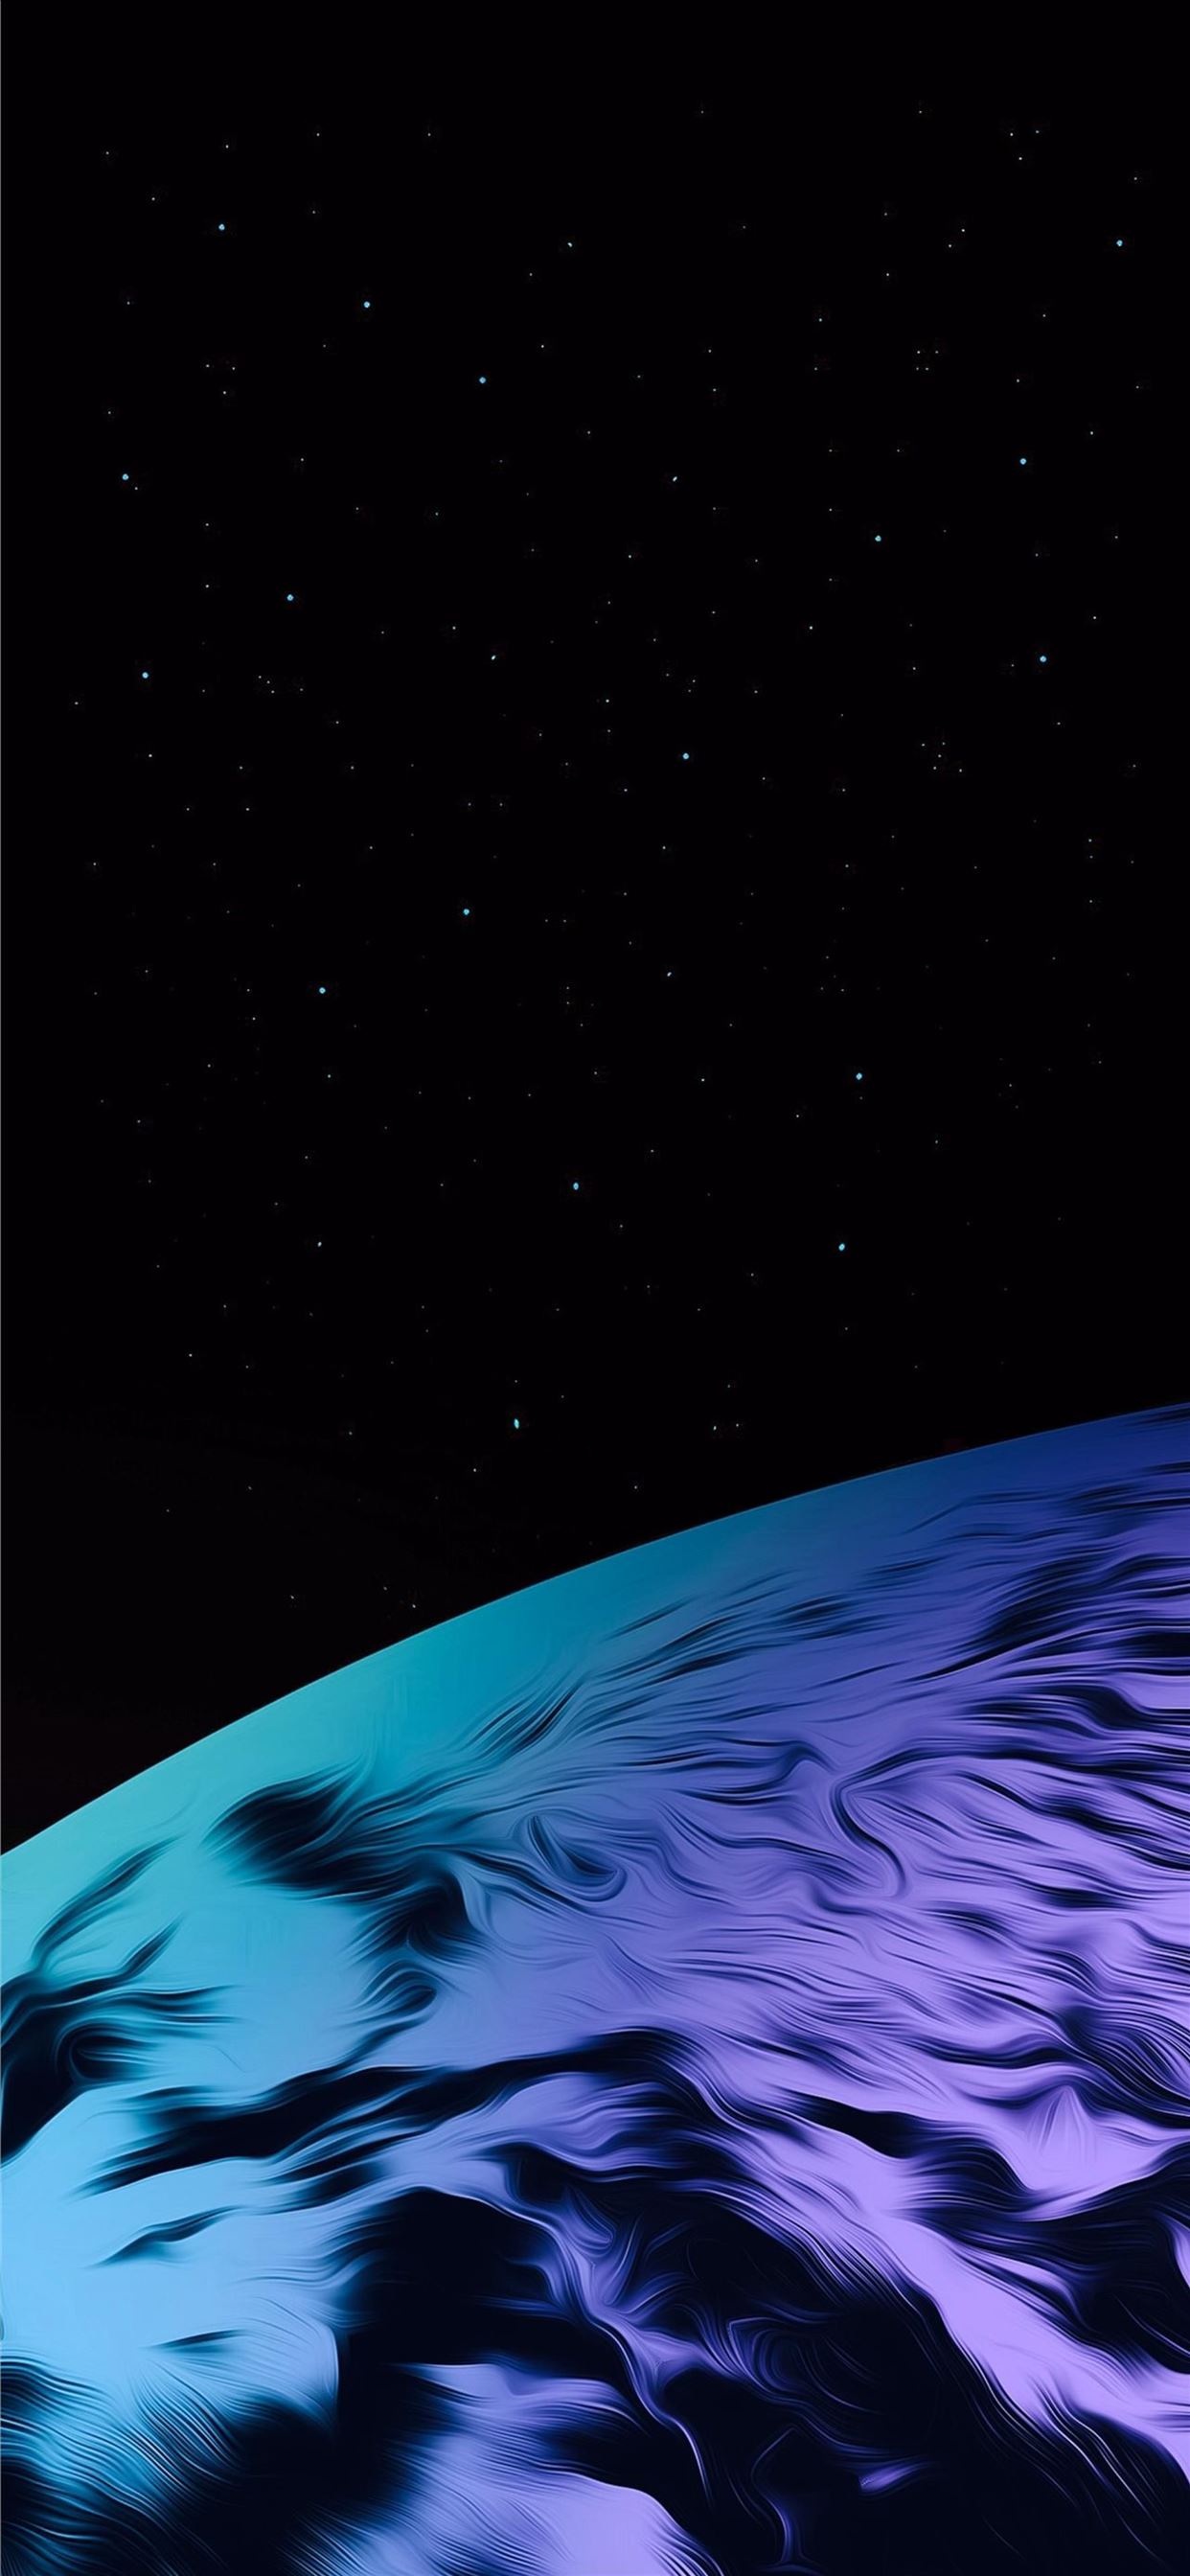 Samsung wallpaper: Với những hình nền địa cầu và thiên nhiên đầy màu sắc, Samsung wallpaper sẽ mang lại cho bạn những trải nghiệm đầy phấn khích và bất ngờ. Dễ dàng thay đổi để tận hưởng những hình ảnh tuyệt vời trong từng khoảnh khắc.